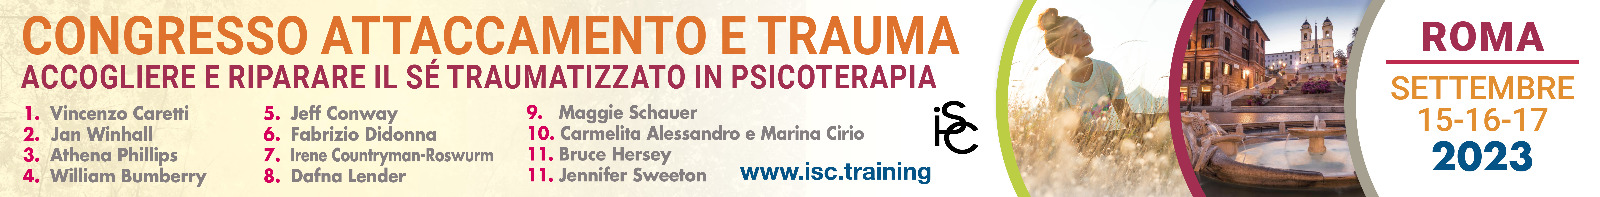 Congresso Attaccamento e Trauma 2023 ISC Training